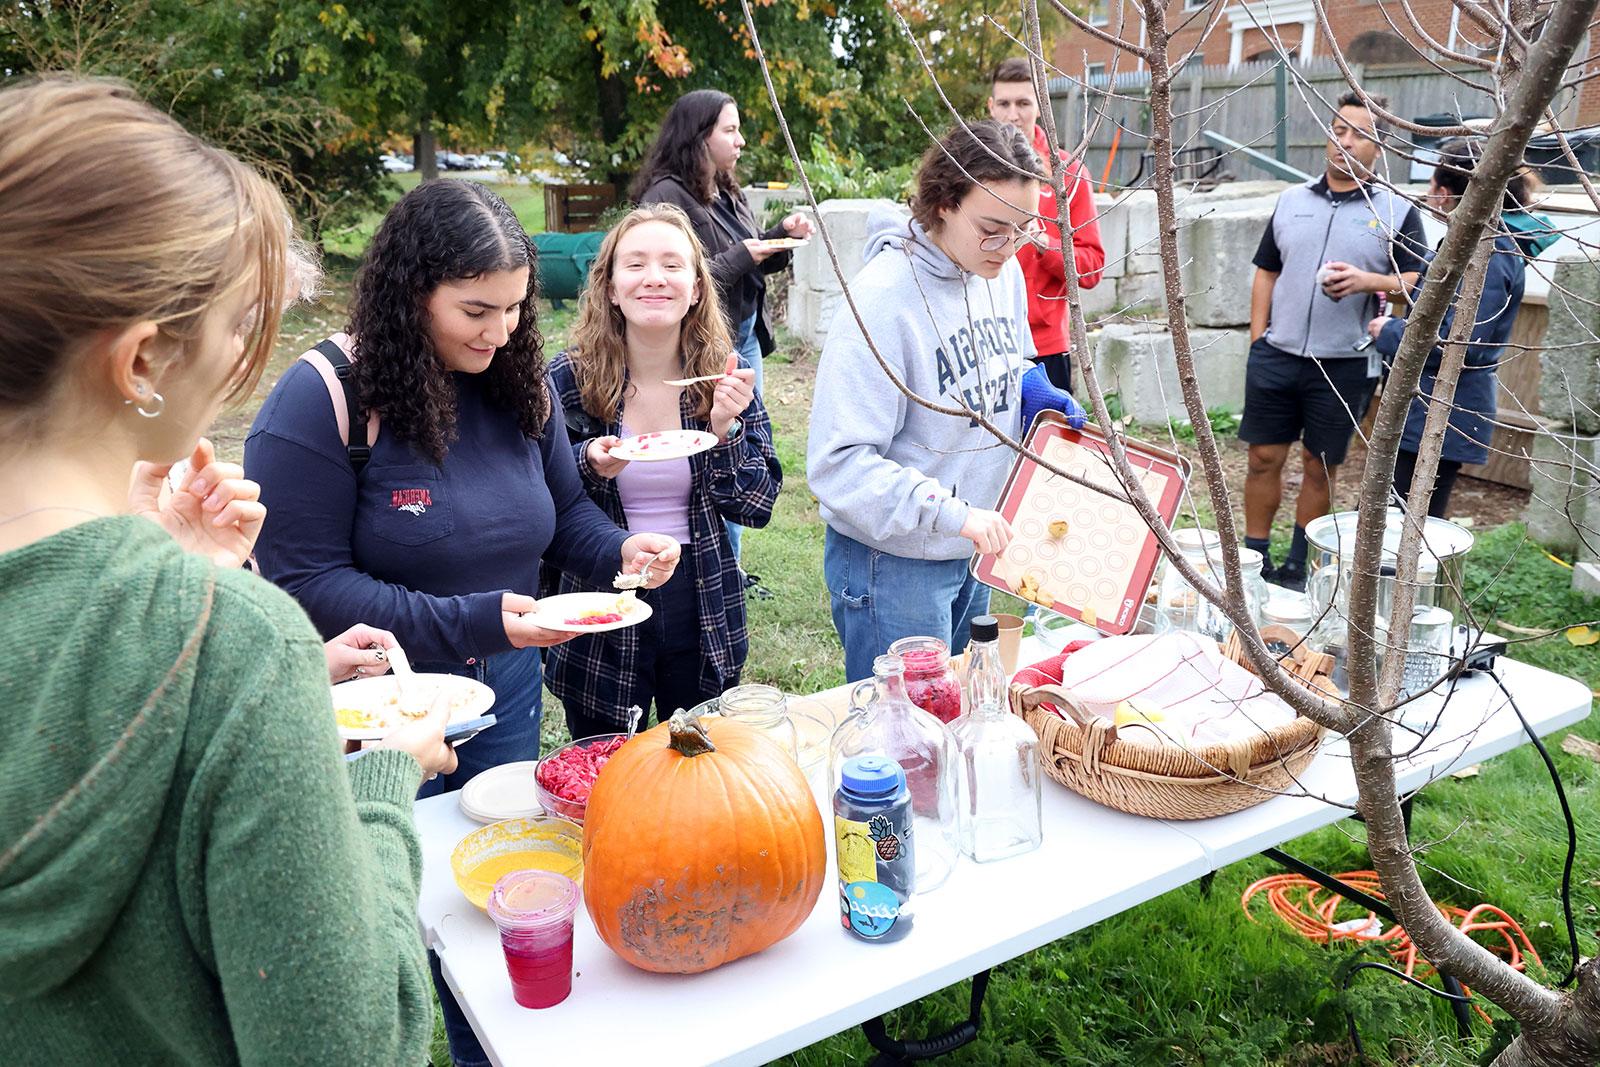 Oktoberfest celebration at the campus garden